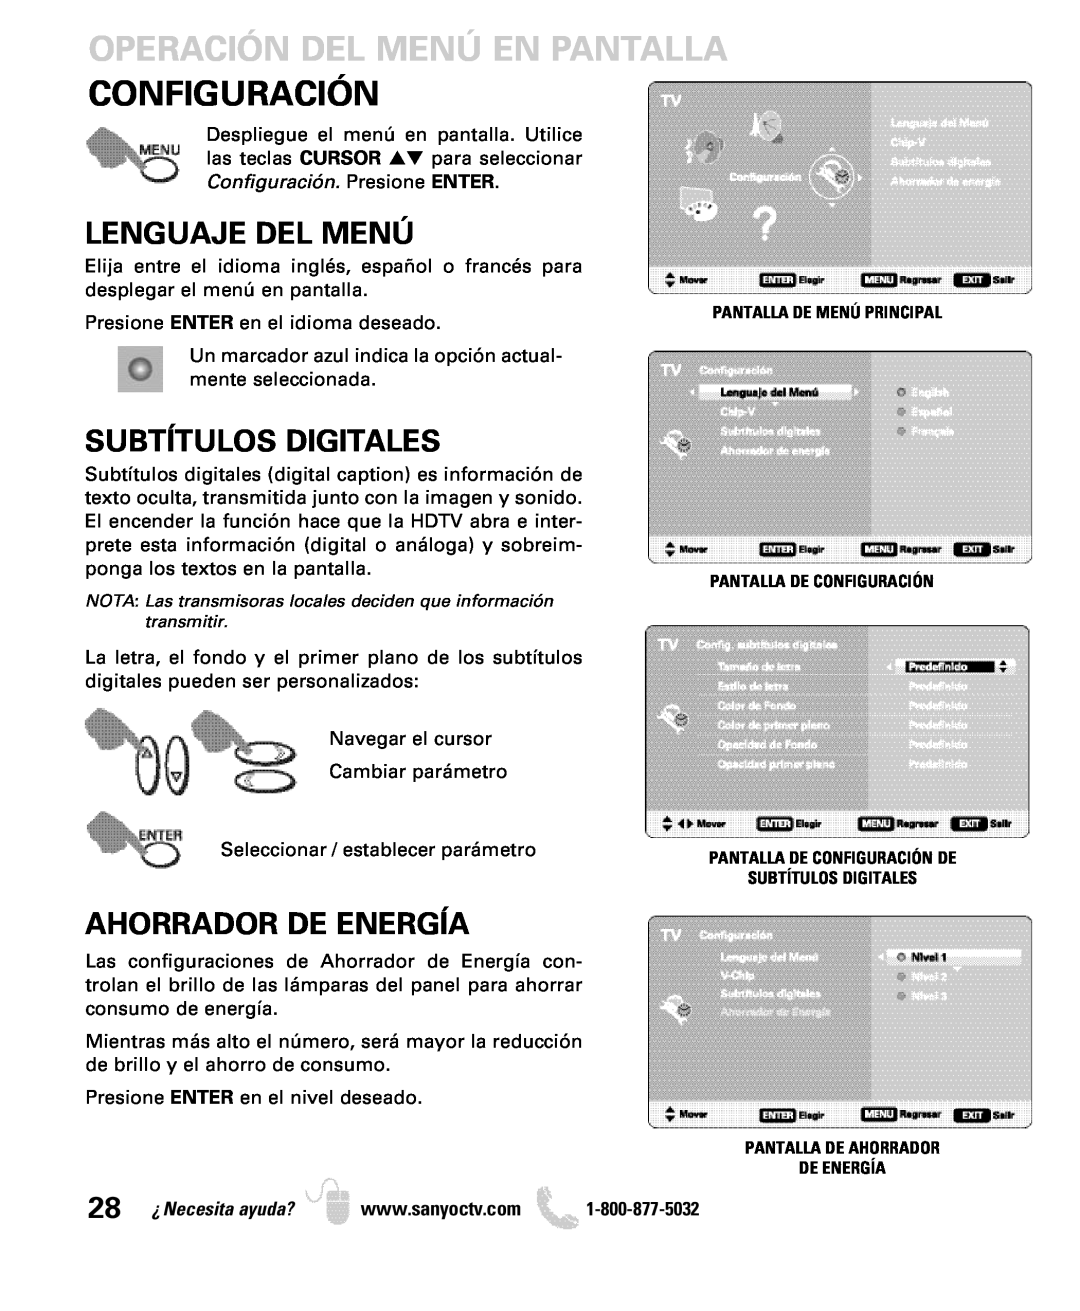 Sanyo DP26649 Configuración, Lenguaje Del Menú, Subtítulos Digitales, Ahorrador De Energía, Operación Del Menú En Pantalla 